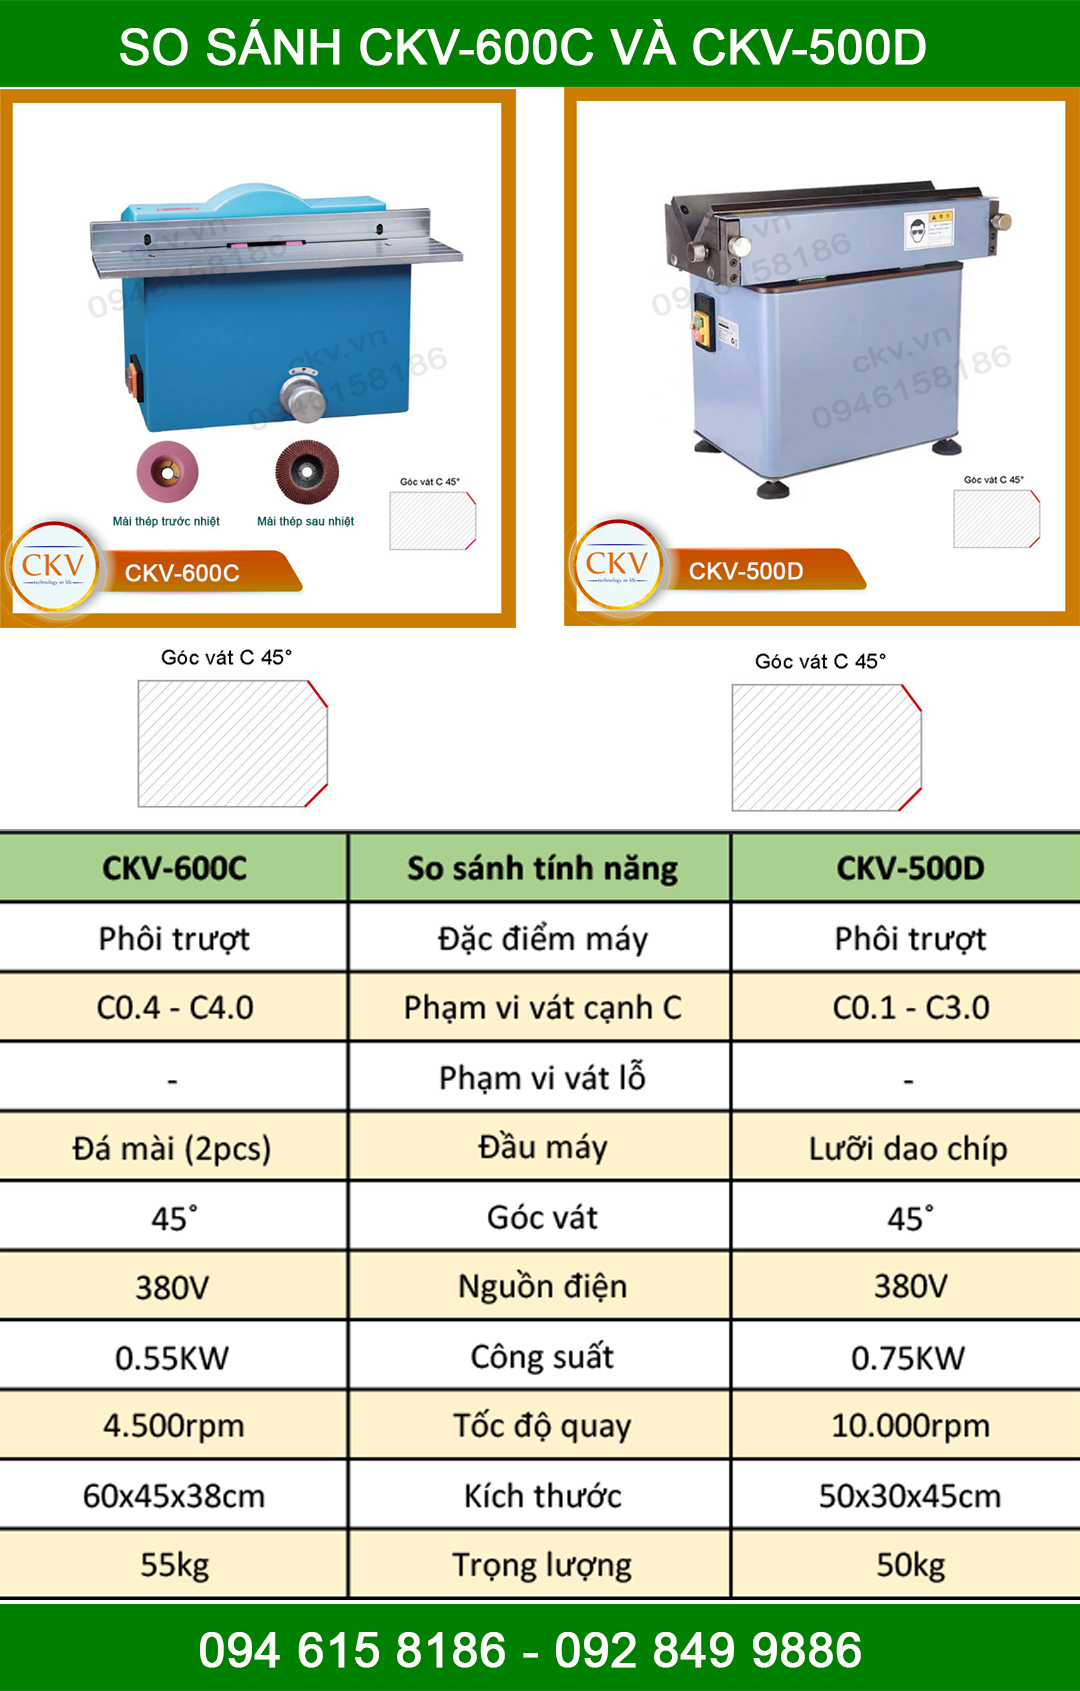 So sánh CKV-600C với CKV-500D